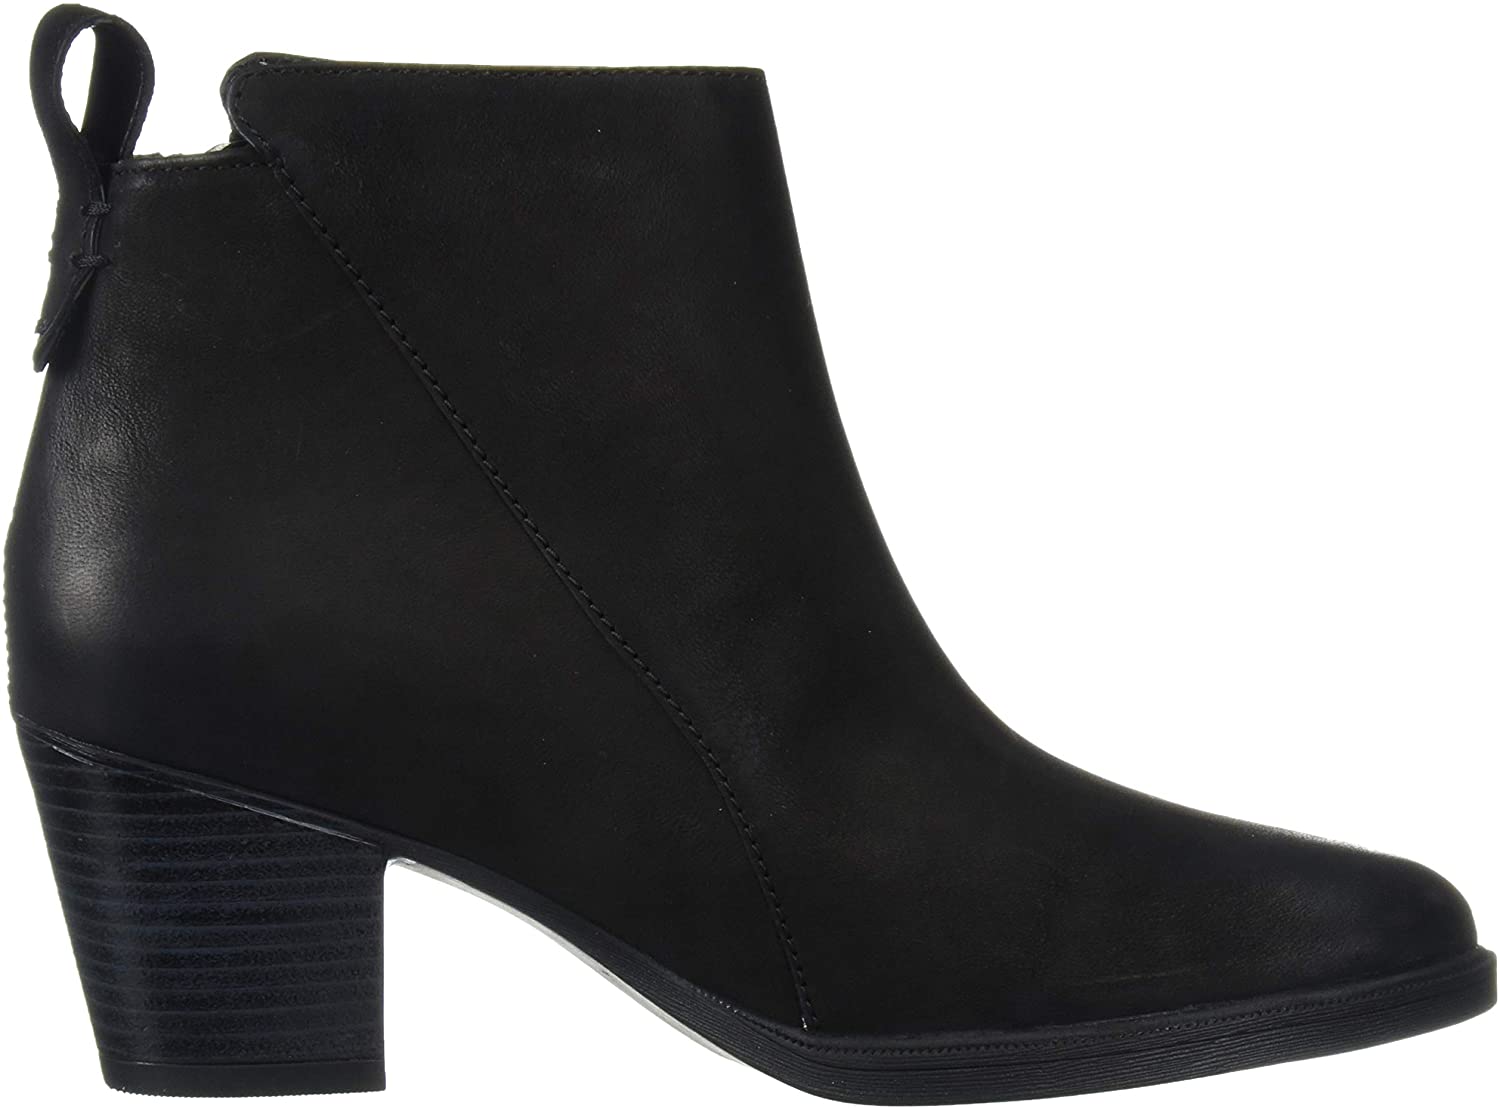 Rockport Women's Maddie Ankle Zip Bt Boot, Black, Size 8.5 W73T | eBay